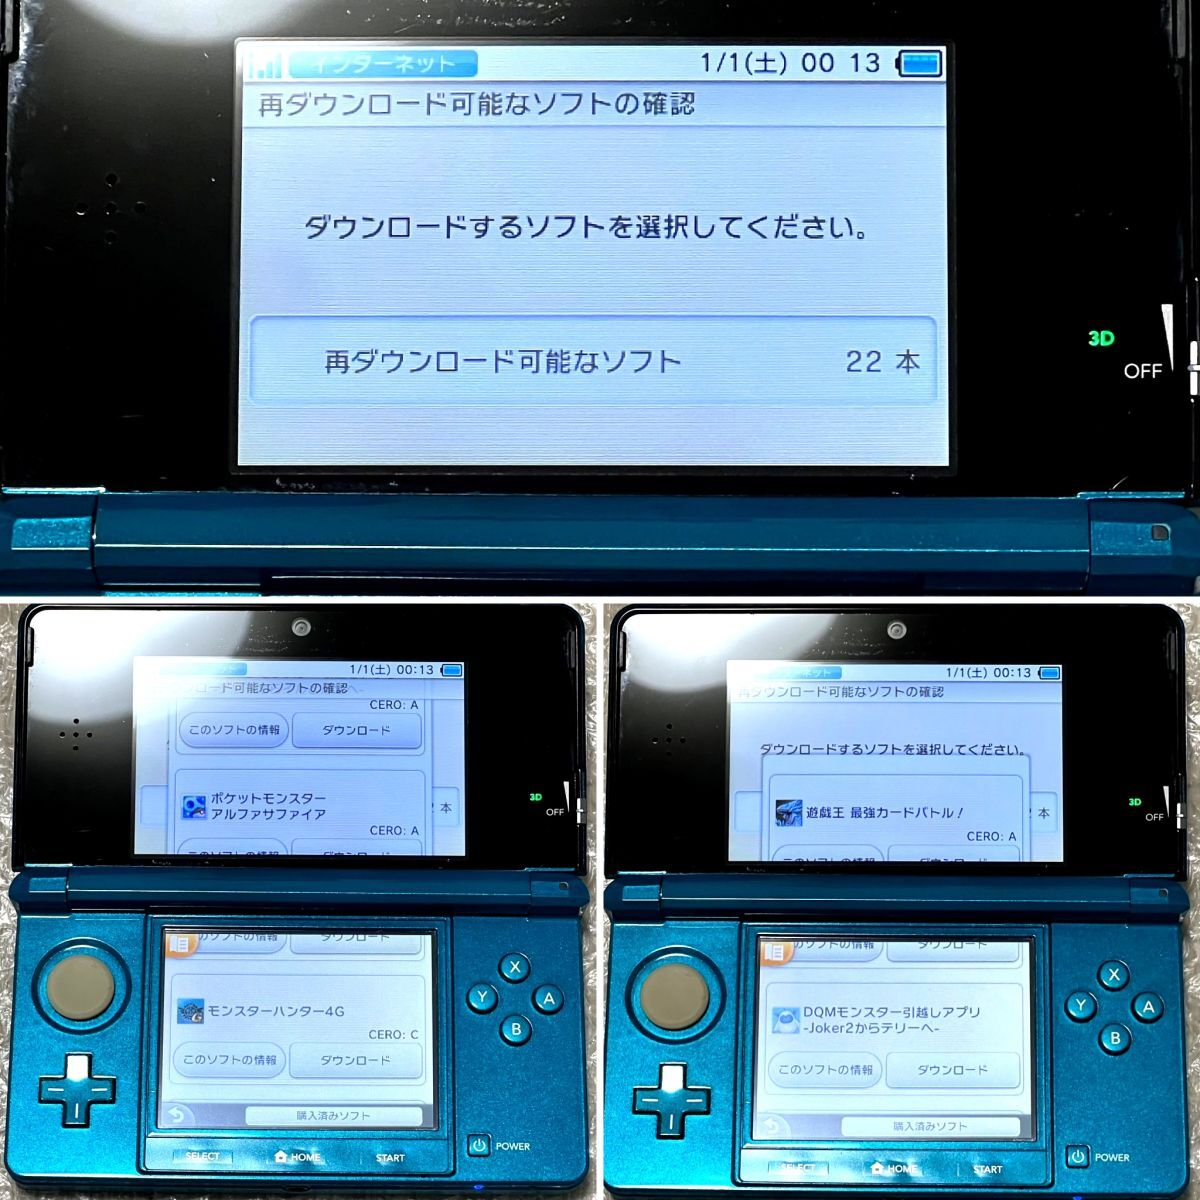  Inazuma eleven GO Galaxy big van download Nintendo 3DS body aqua blue NINTENDO 3DS CTR-001 Alpha sapphire 